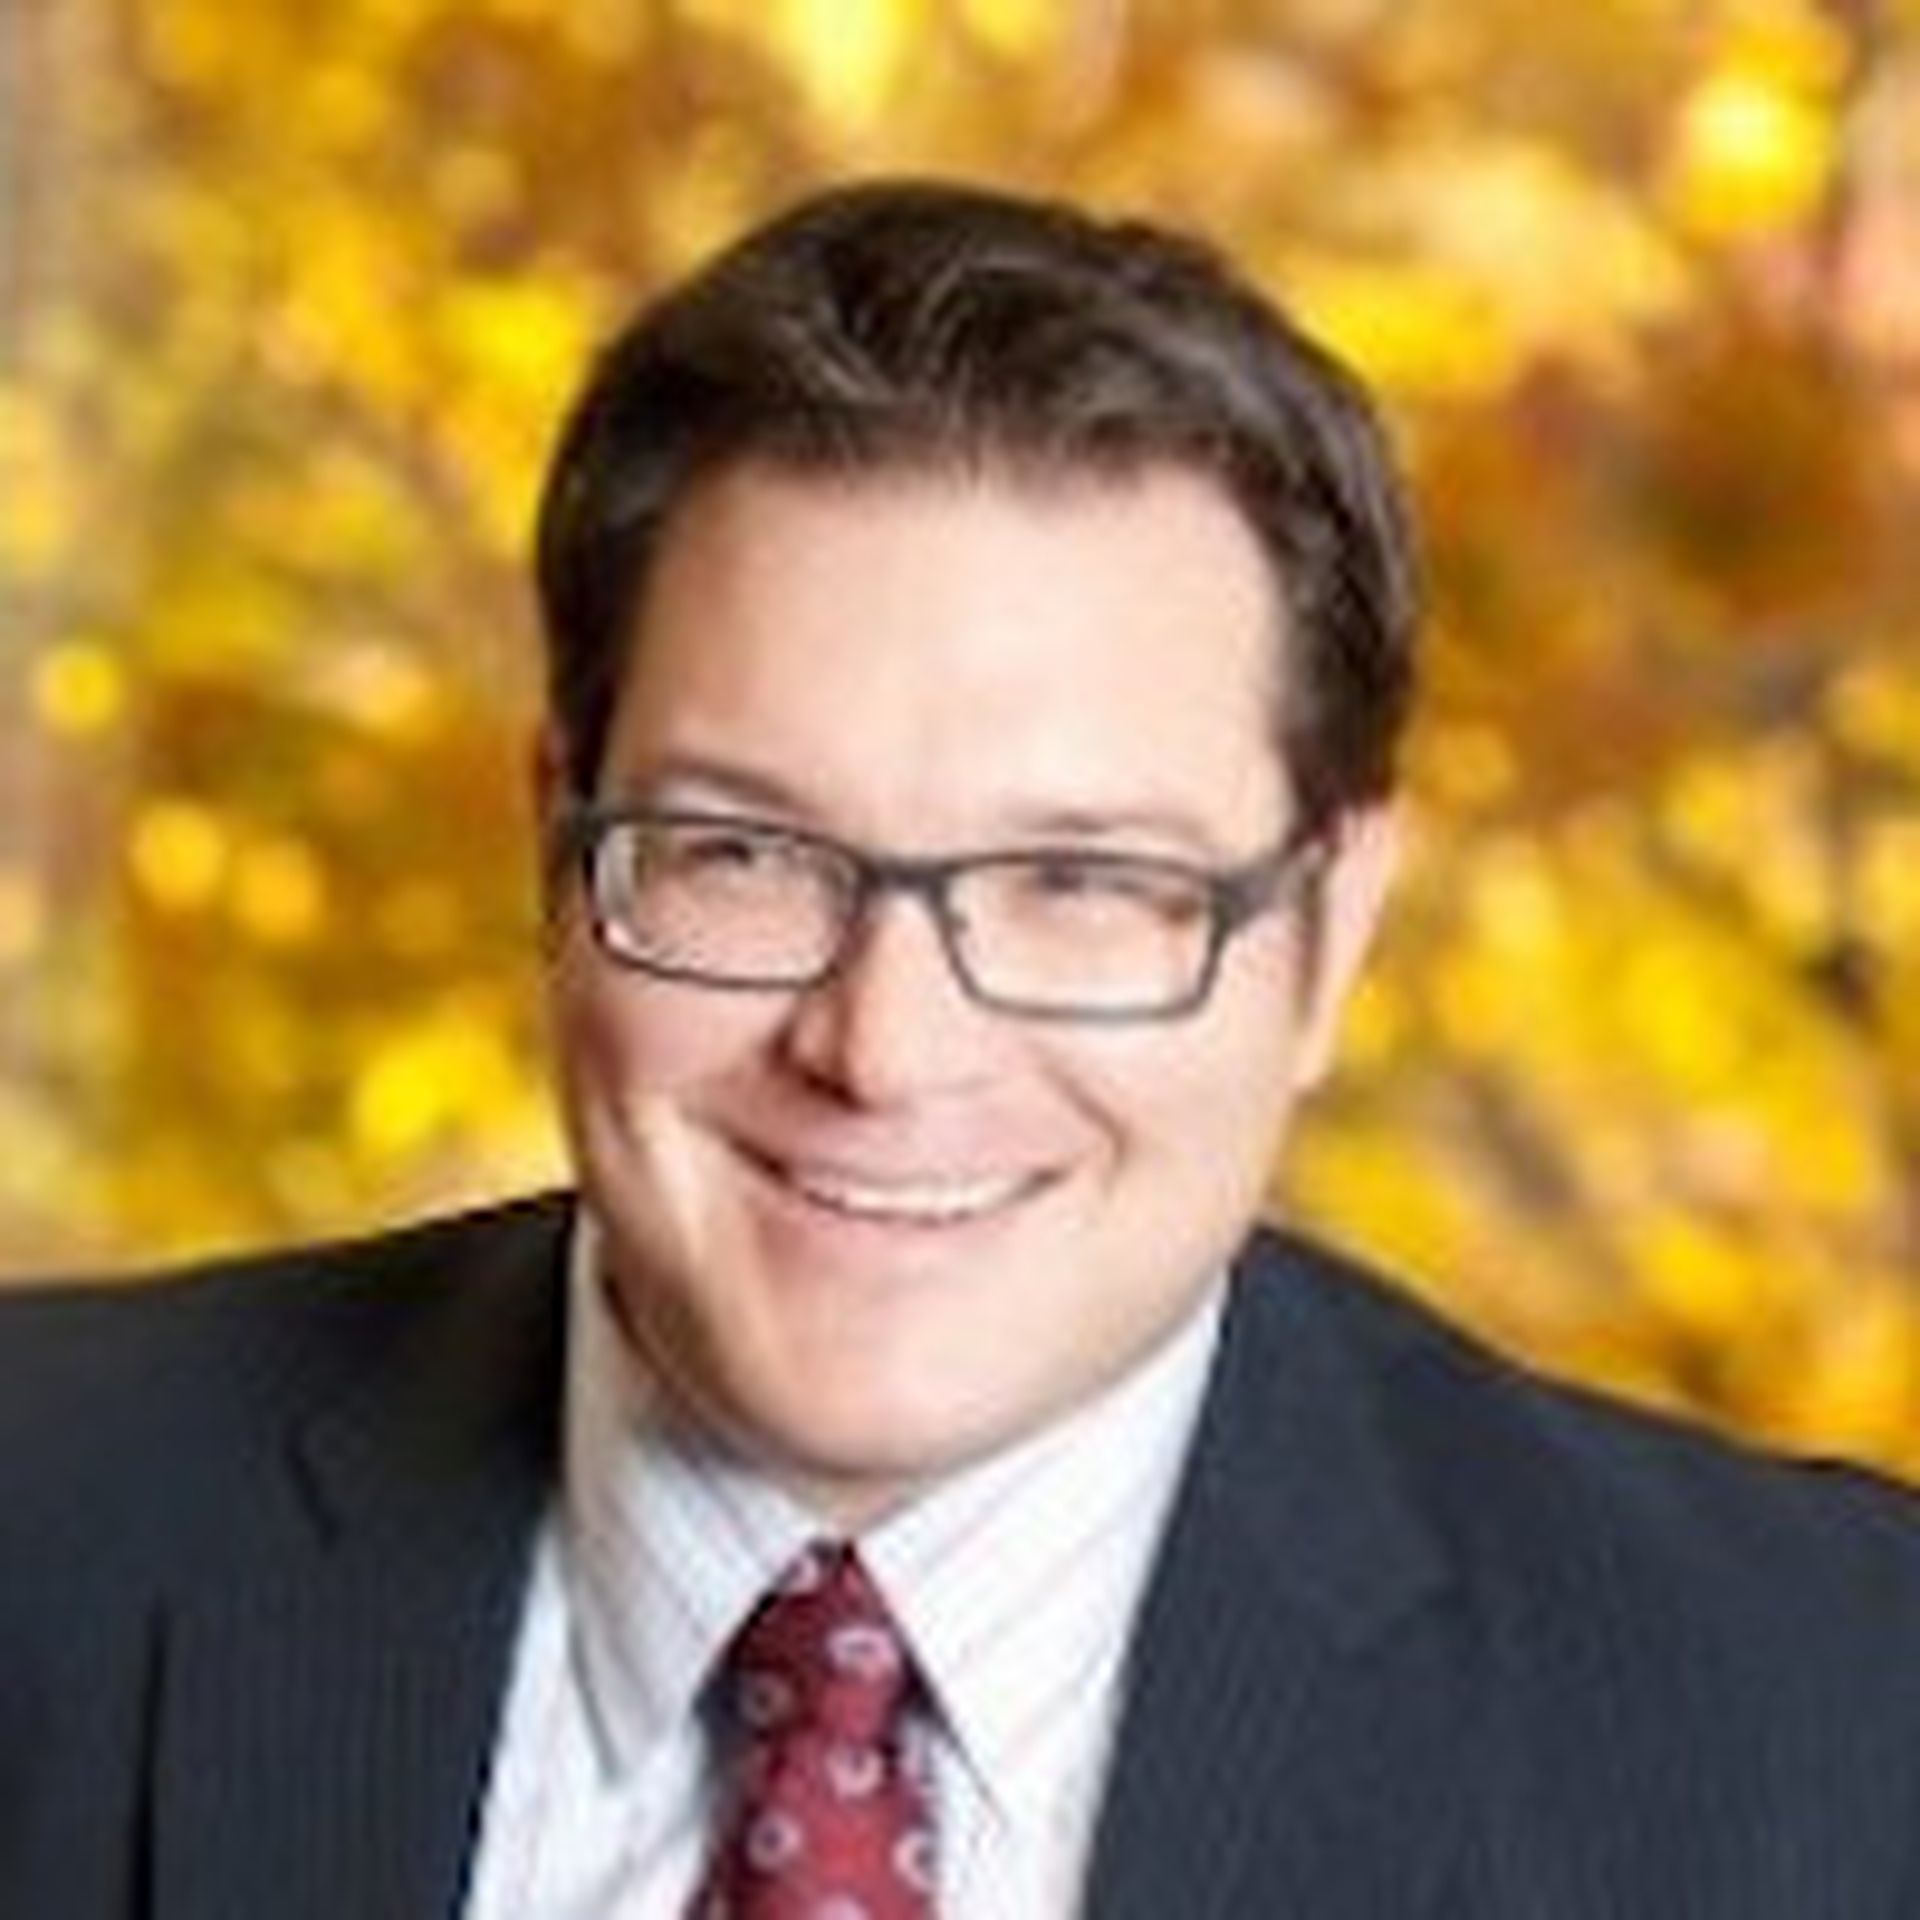 Kevin J. Routhier, CEO, Coretelligent